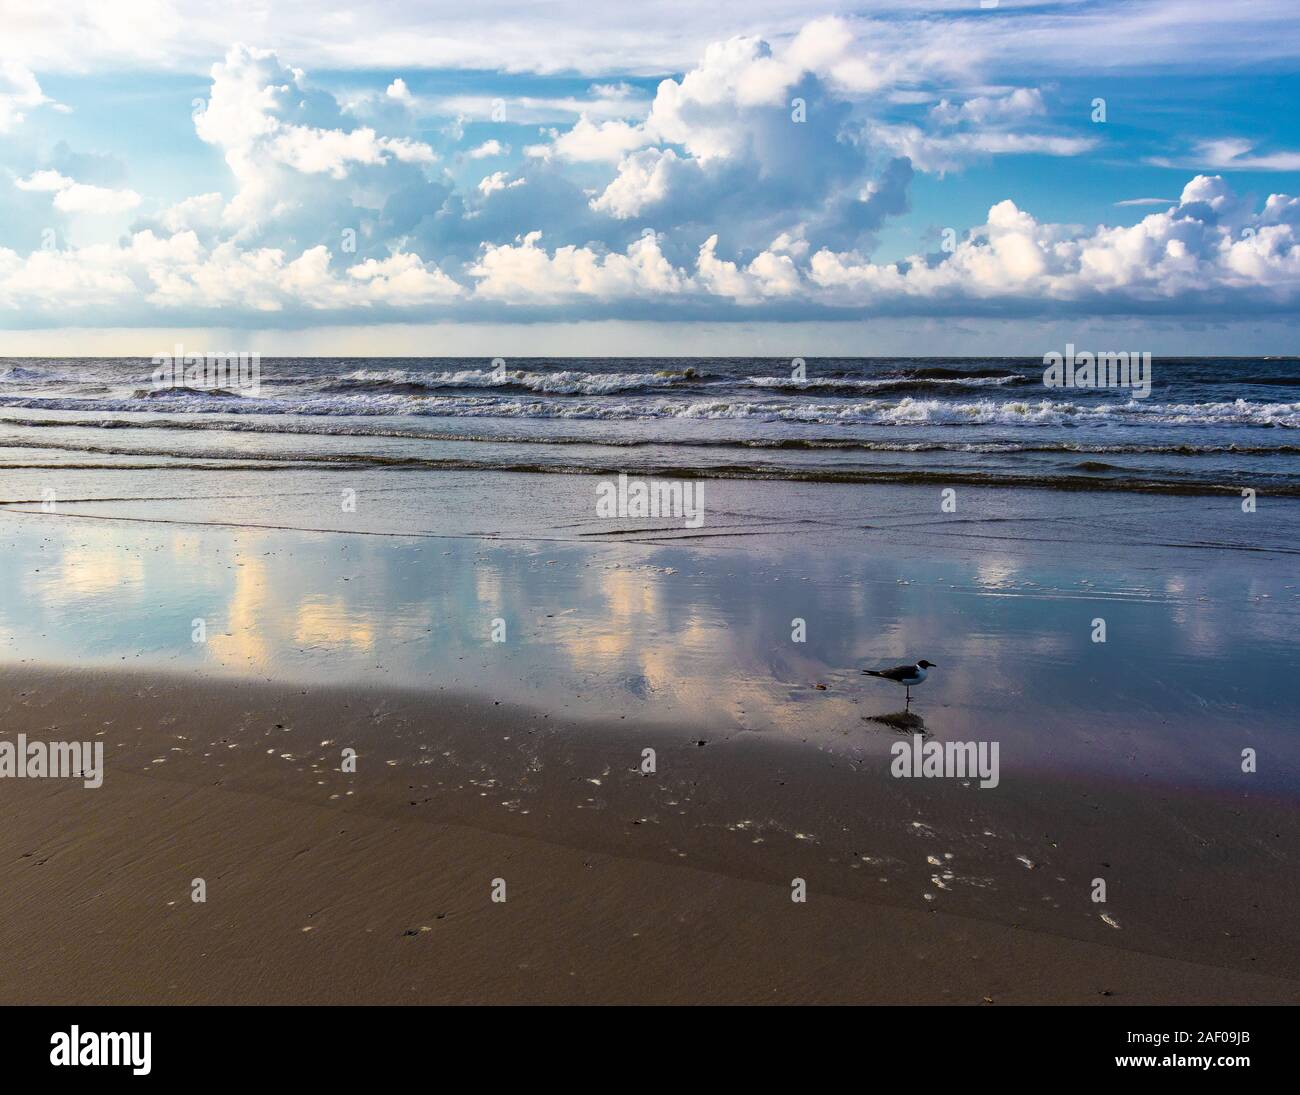 Single bird standing on the ocean shore in Folly Beach, South Carolina Stock Photo